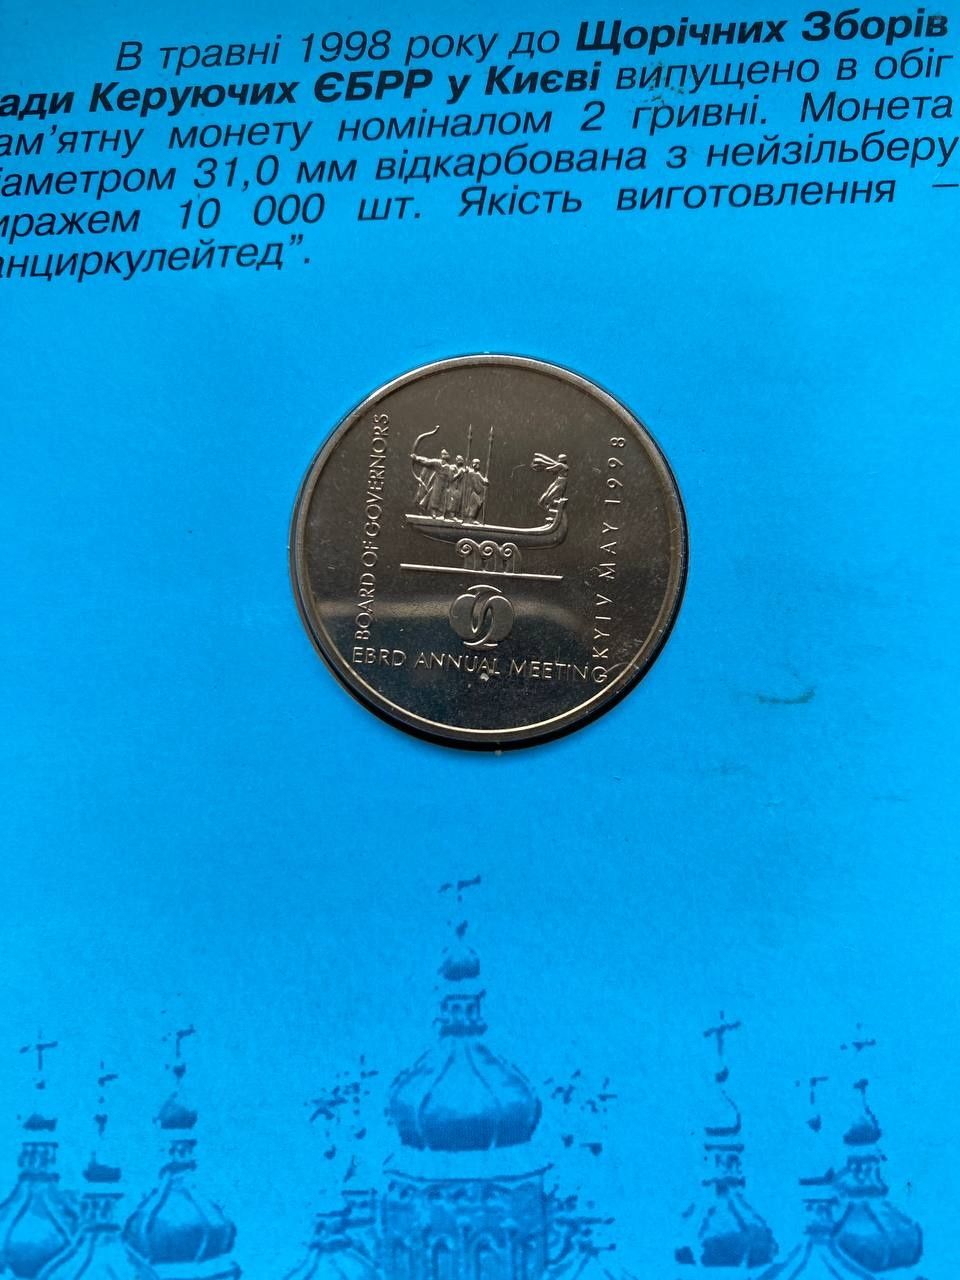 Продам монету, посвященную съезду ЕБРР в Киеве